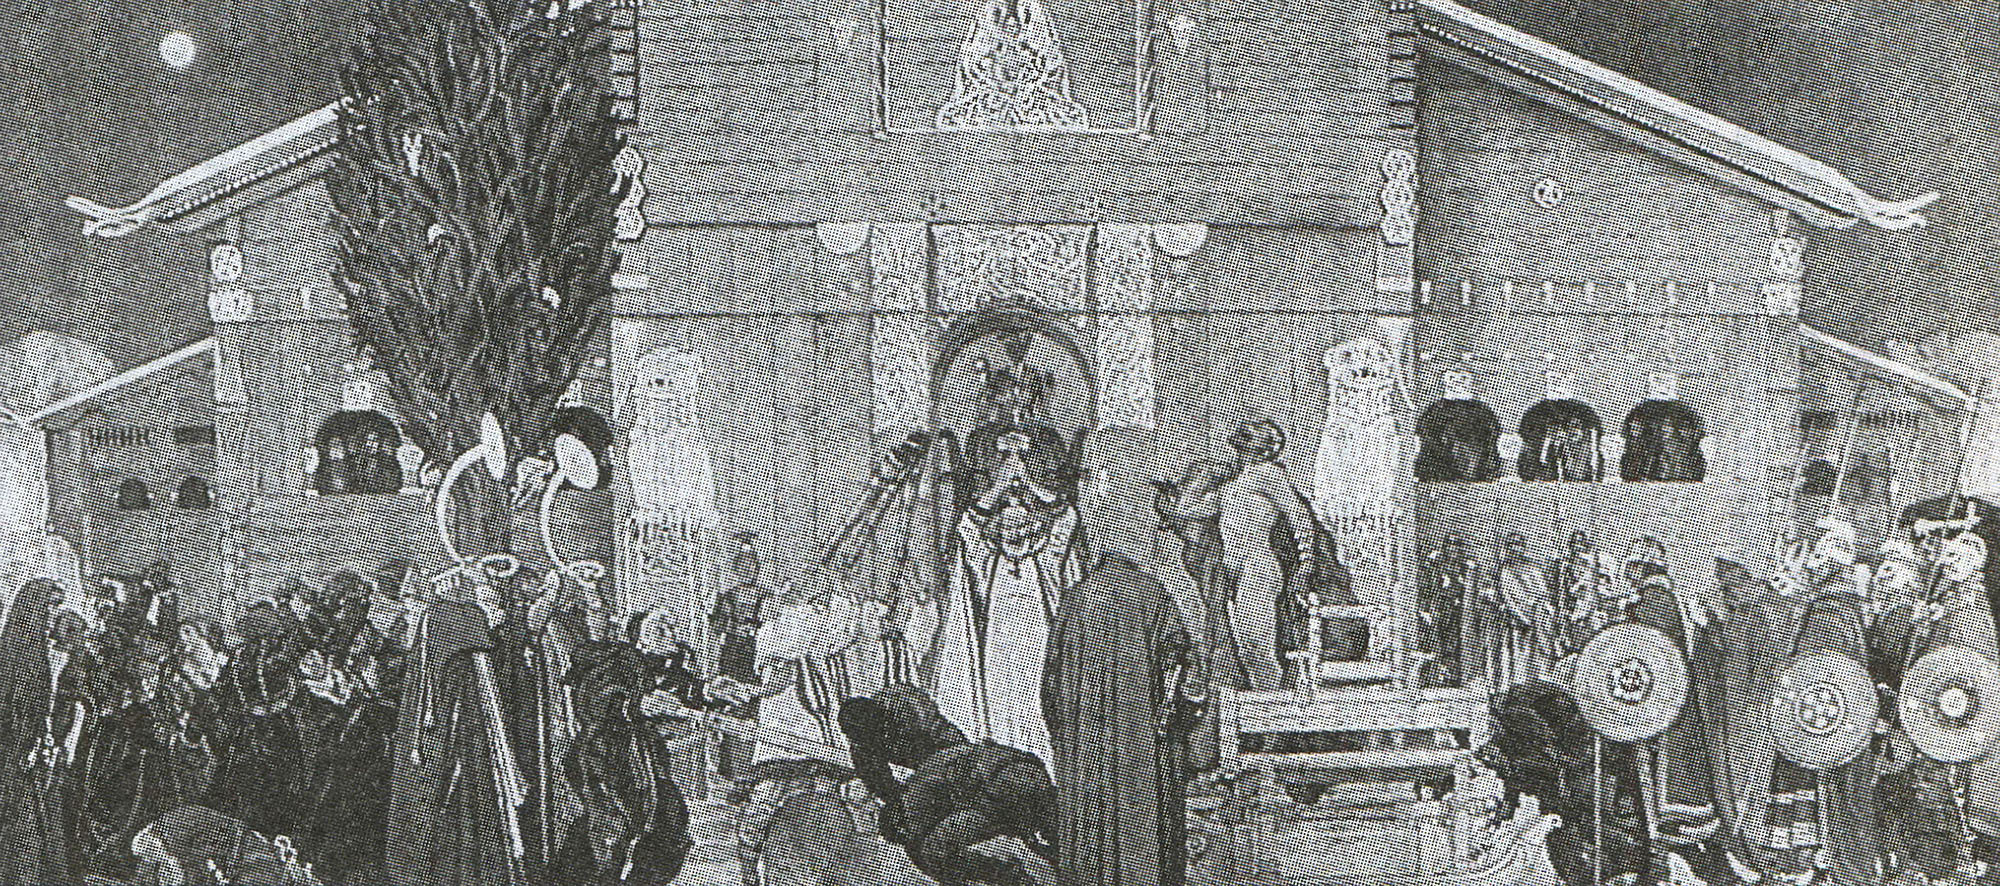 К. Ларссон. "Принесение в жертву короля Доналде в Упсале". 1915.